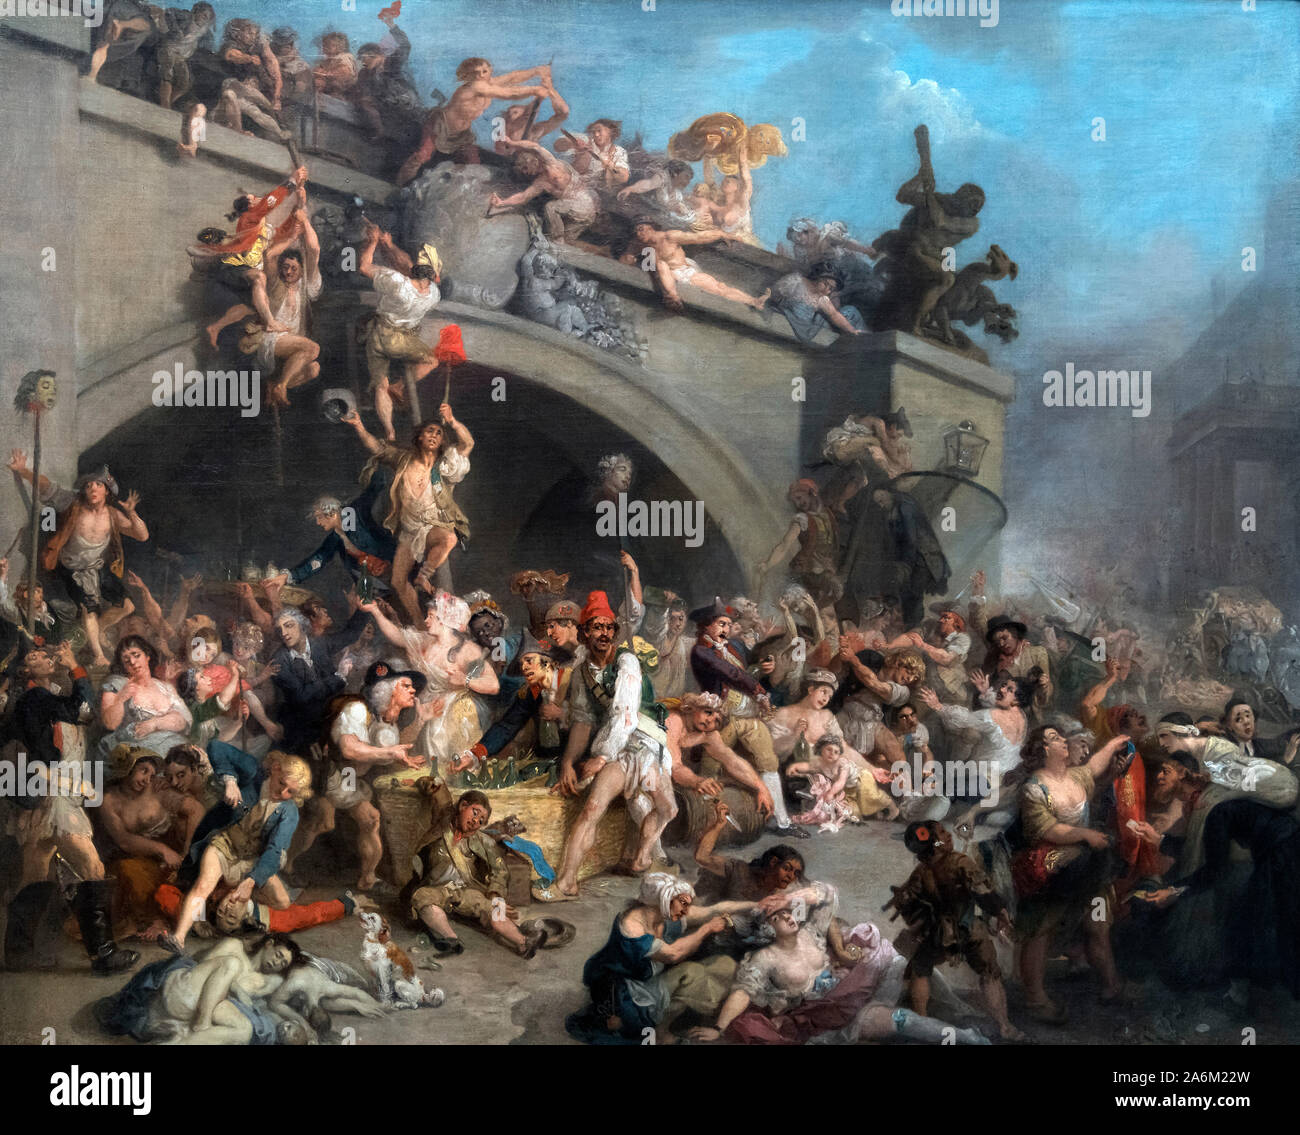 Piller la cave du roi à Paris par Johann Zoffany (1733-1810), huile sur toile, c.1793. Le tableau montre les citoyens français d'assaut le palais des Tuileries en août 1792, pendant la Révolution française. Banque D'Images